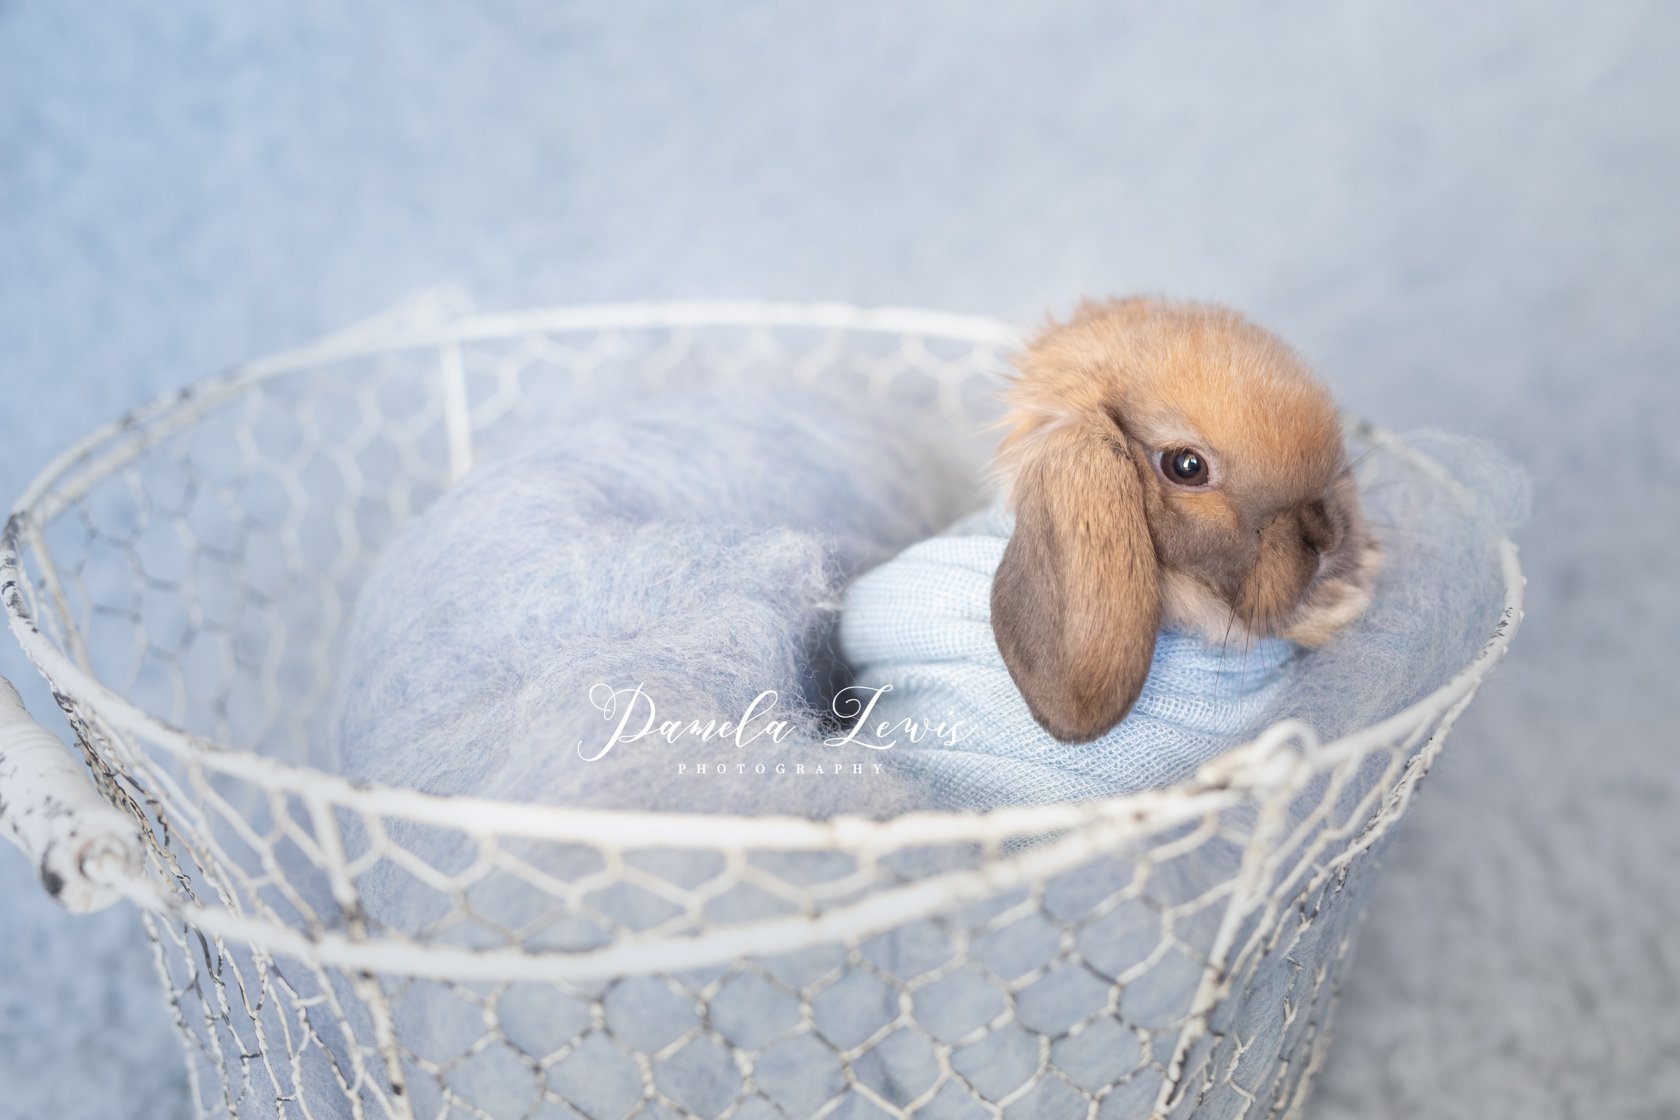 french-blue-faukati-flooring-bunny-pamela-lewis